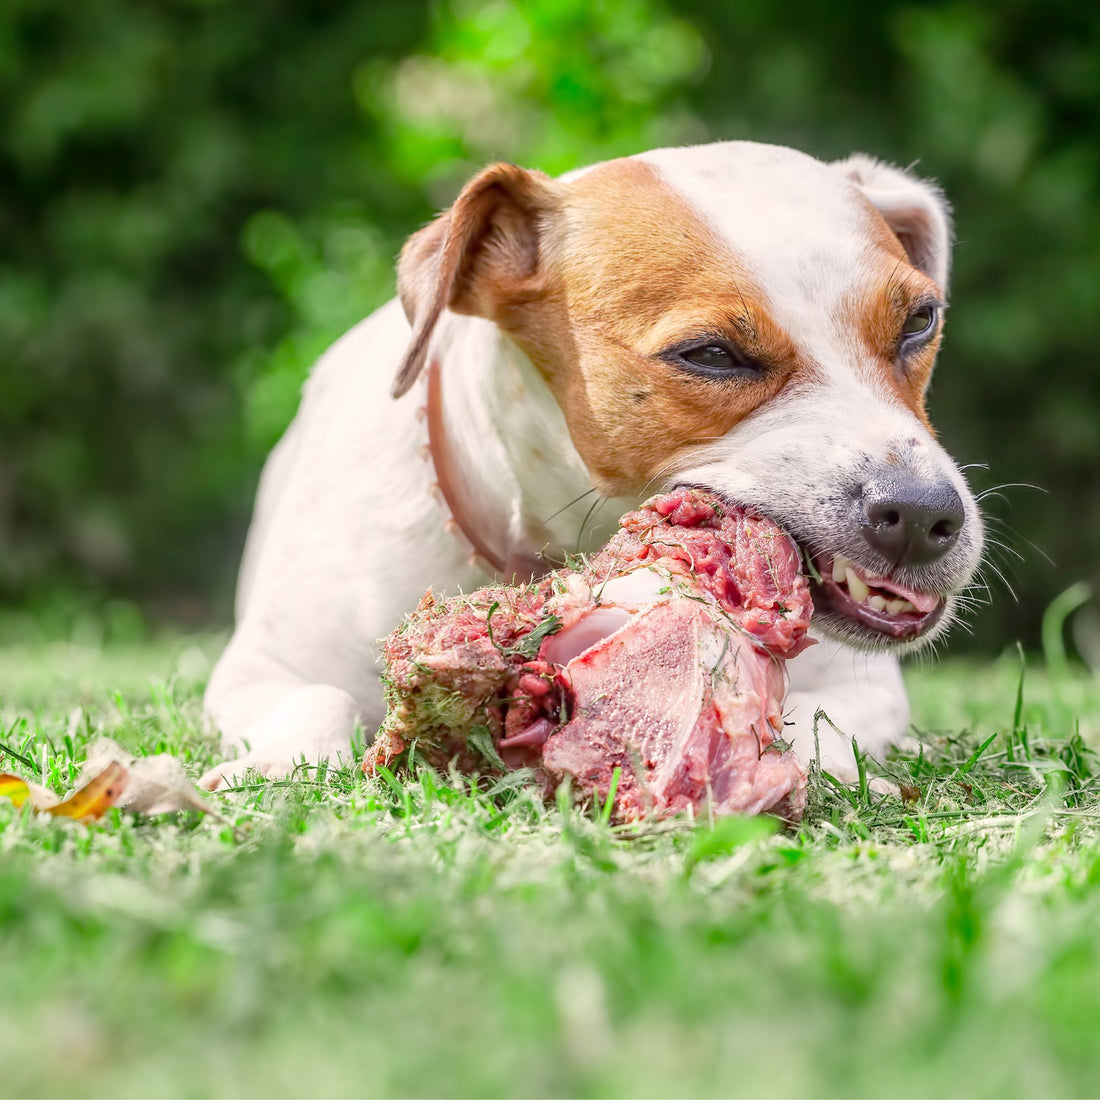 Comment donner des os de façon sécuritaire à ton chien en 10 étapes faciles!